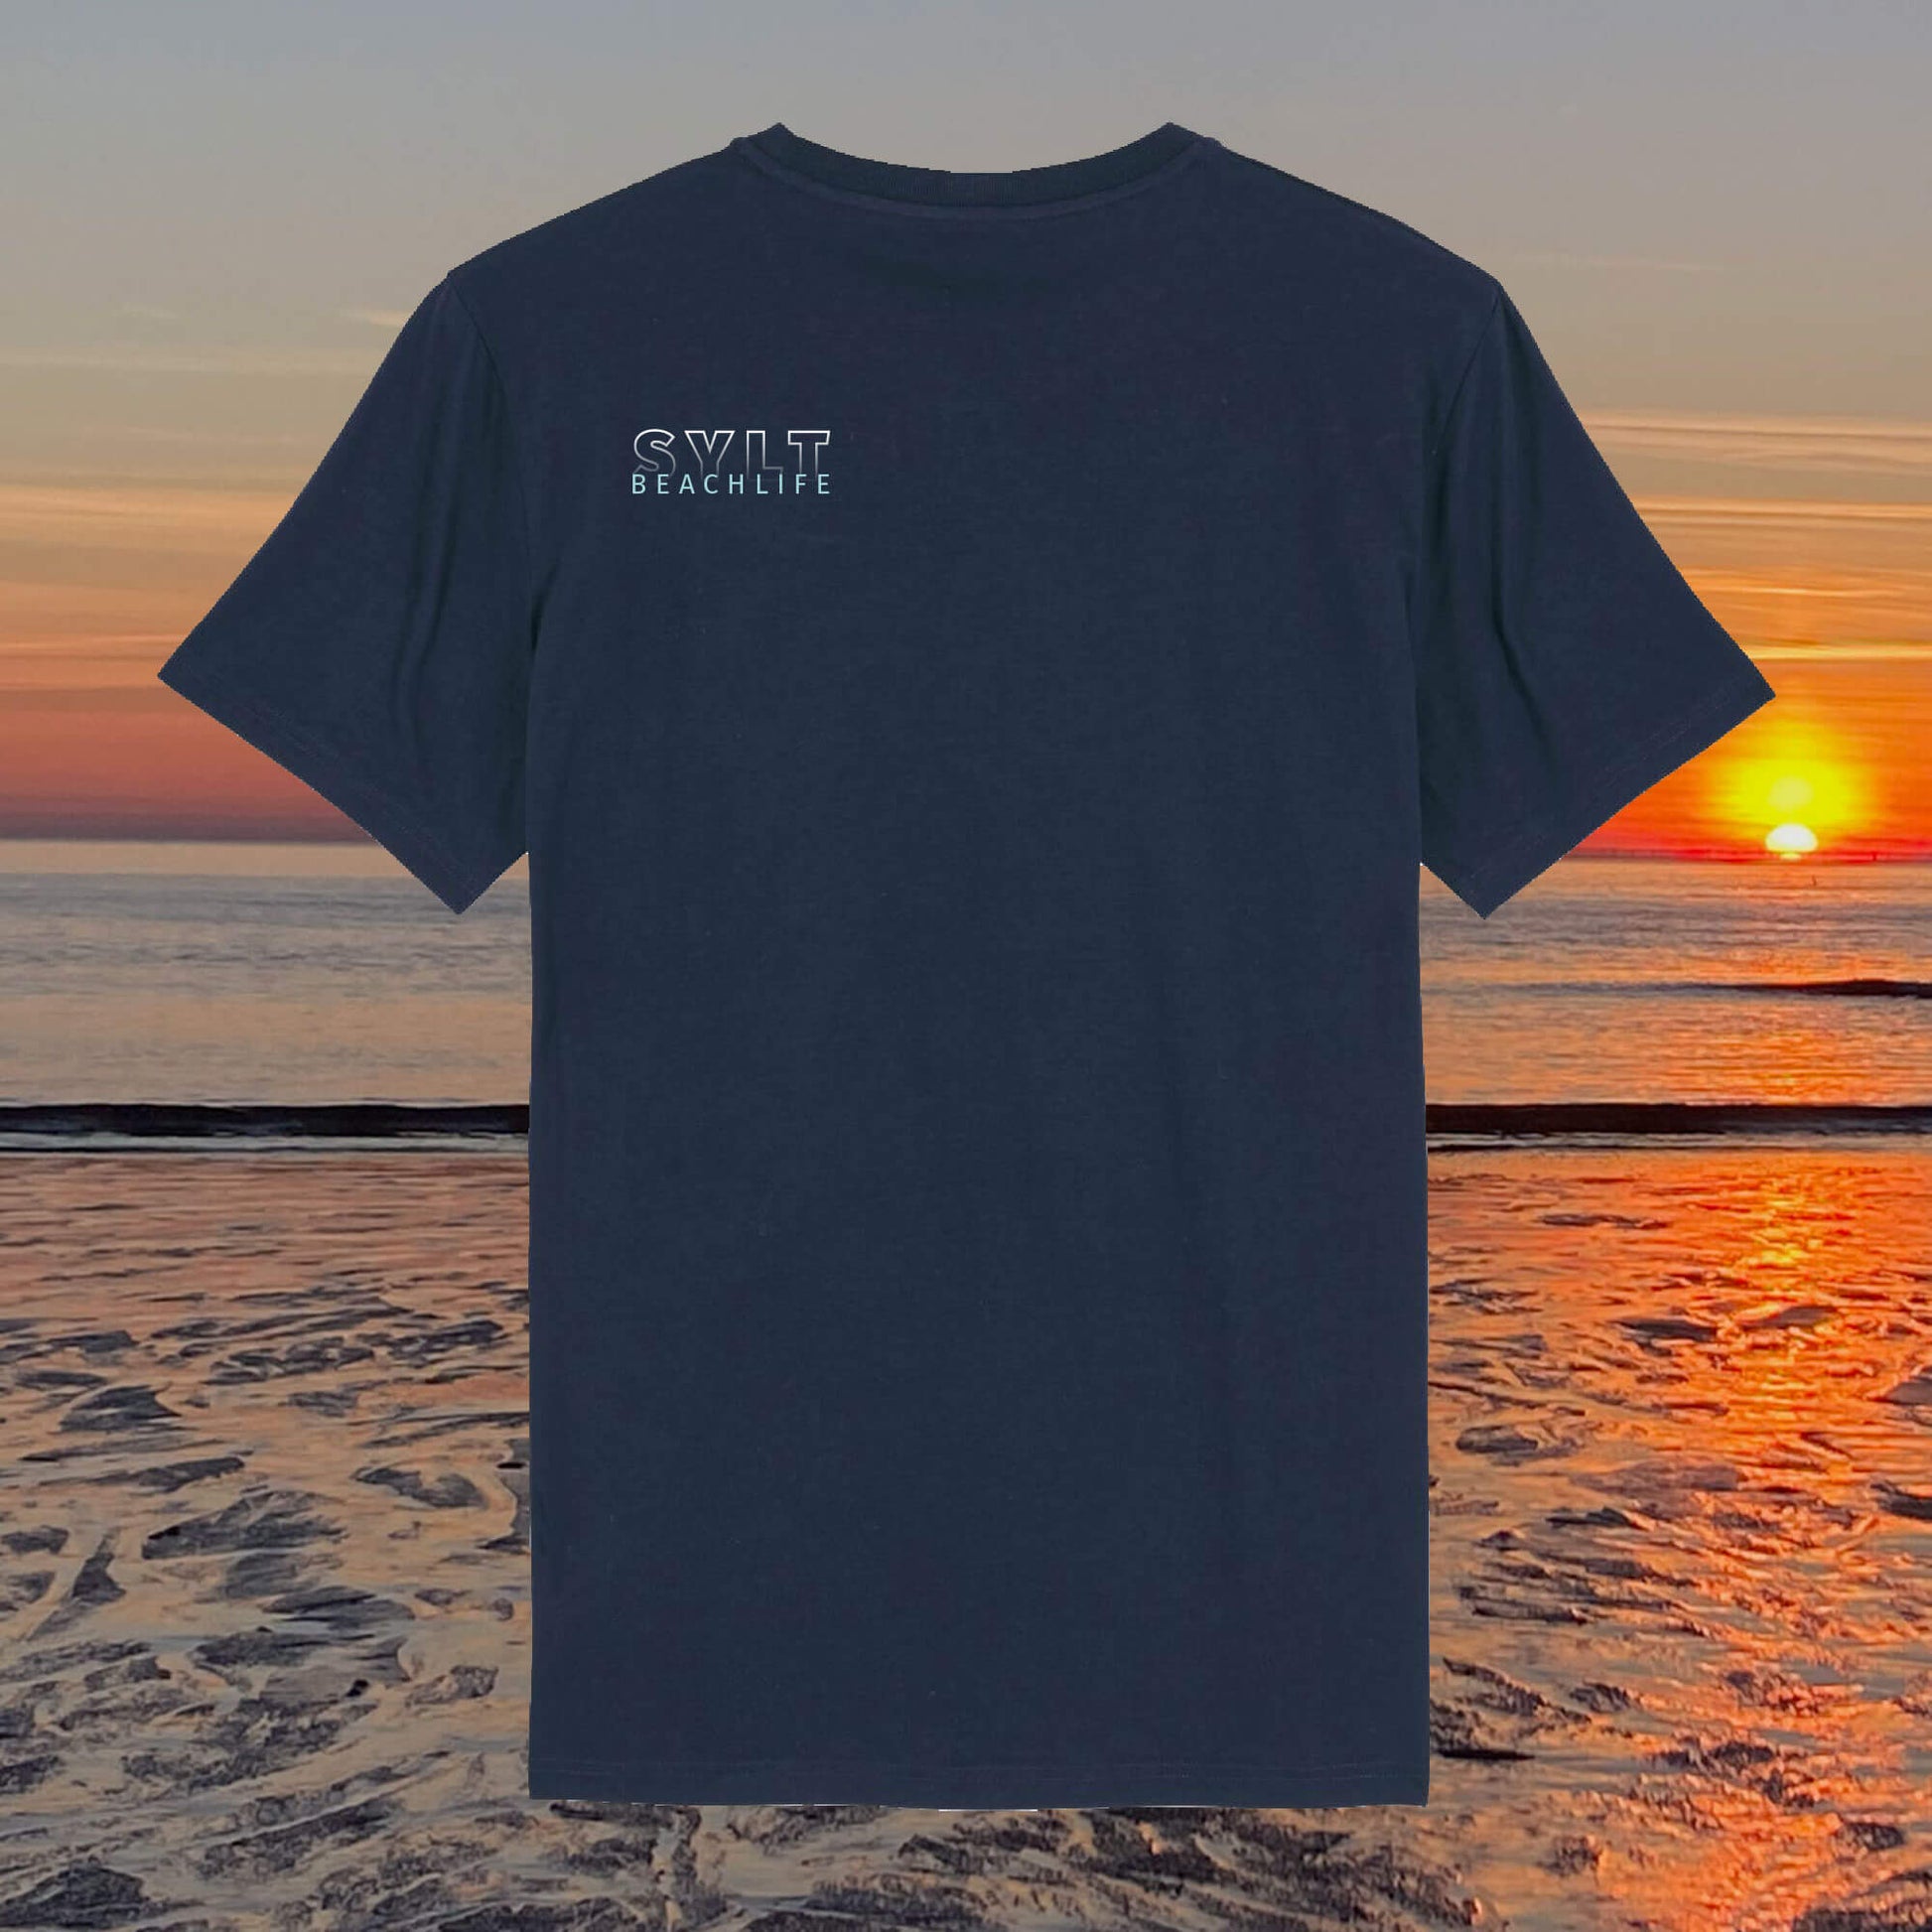 Sylt T-Shirt in dunkelblau mit kleinem Beachlife Aufdruck auf der linken Seite.